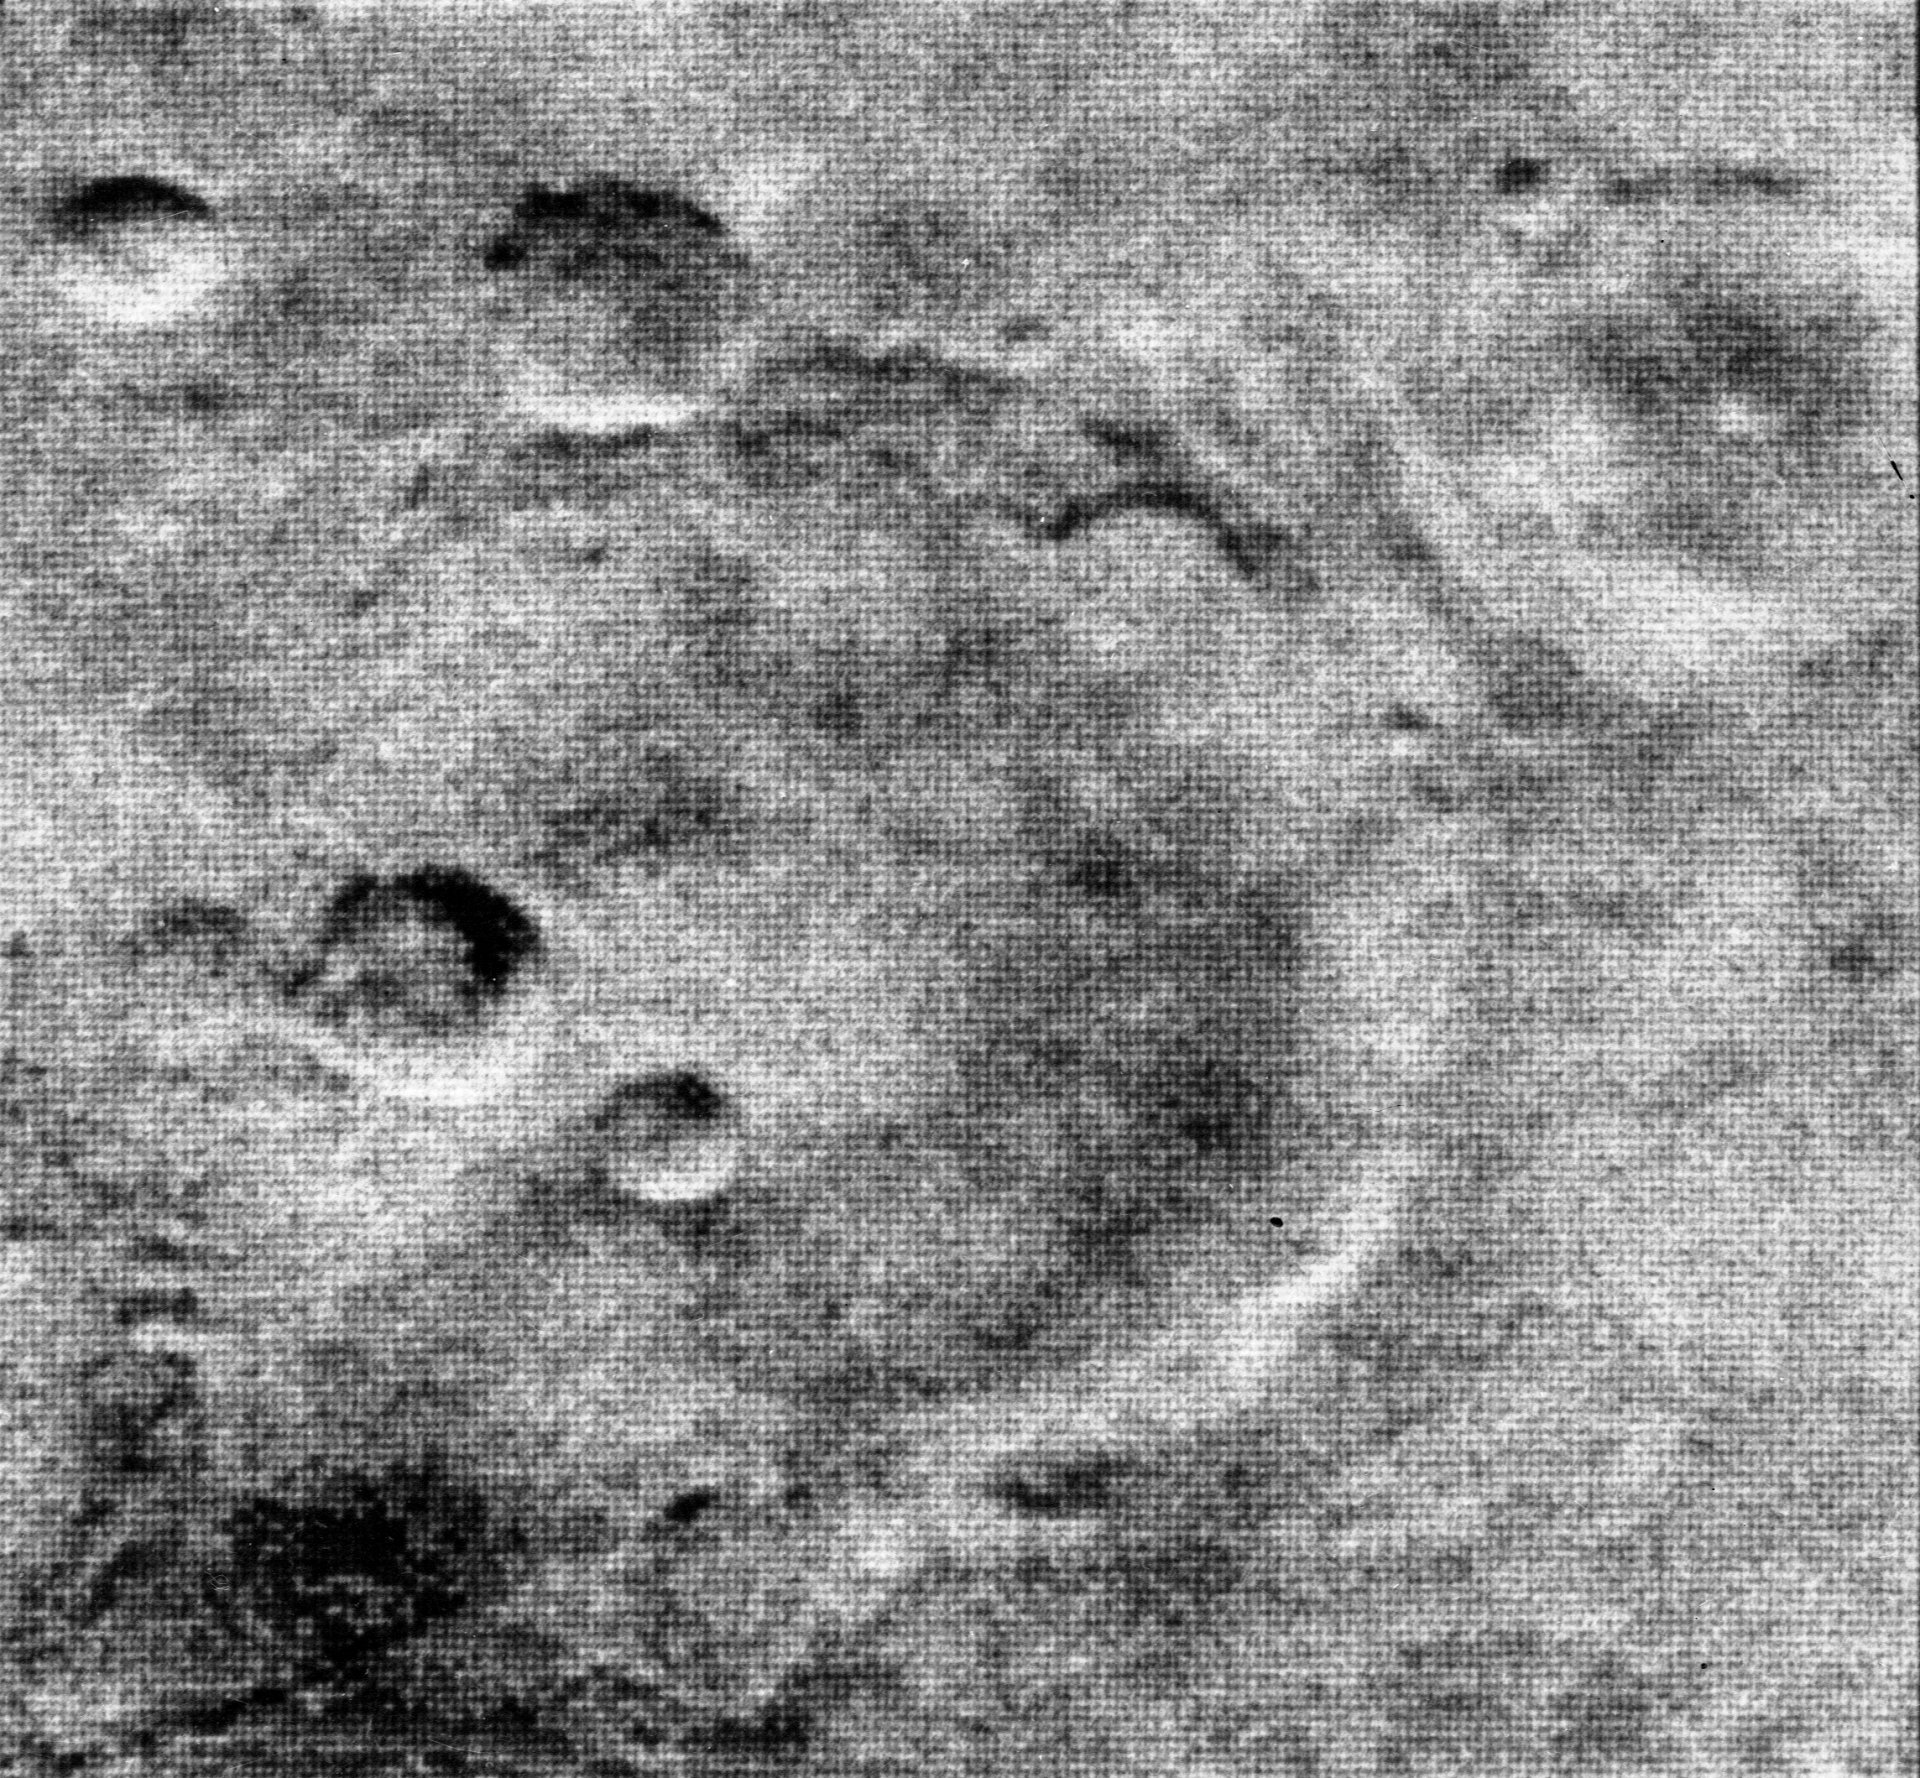 Най-детайлната снимка на "Маринър 4"